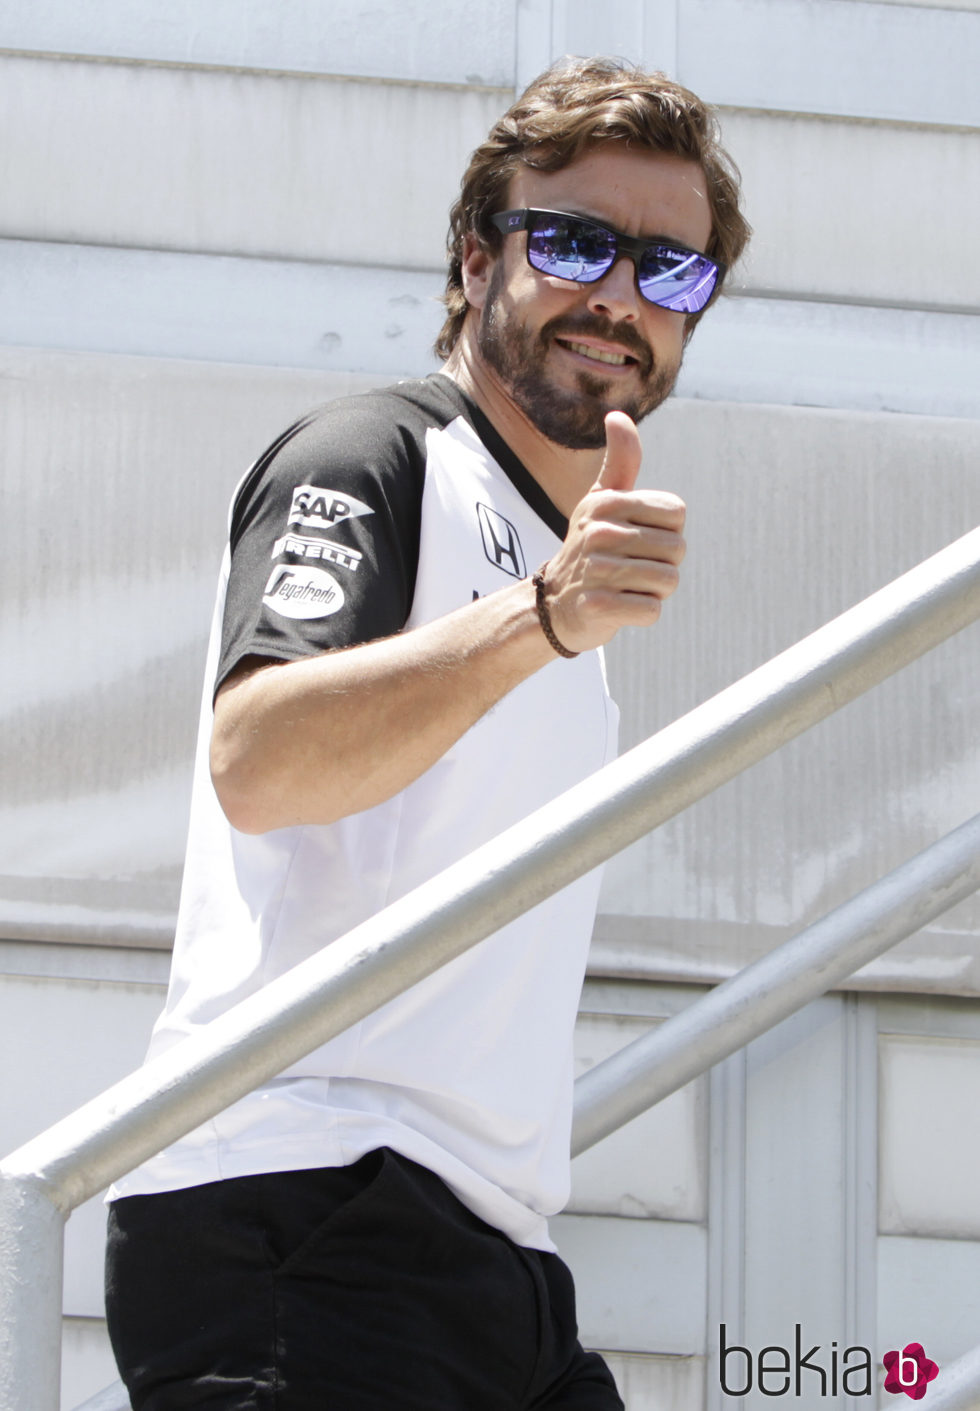 Fernando Alonso en los entrenamientos del GP de Malasia 2015 tras su accidente